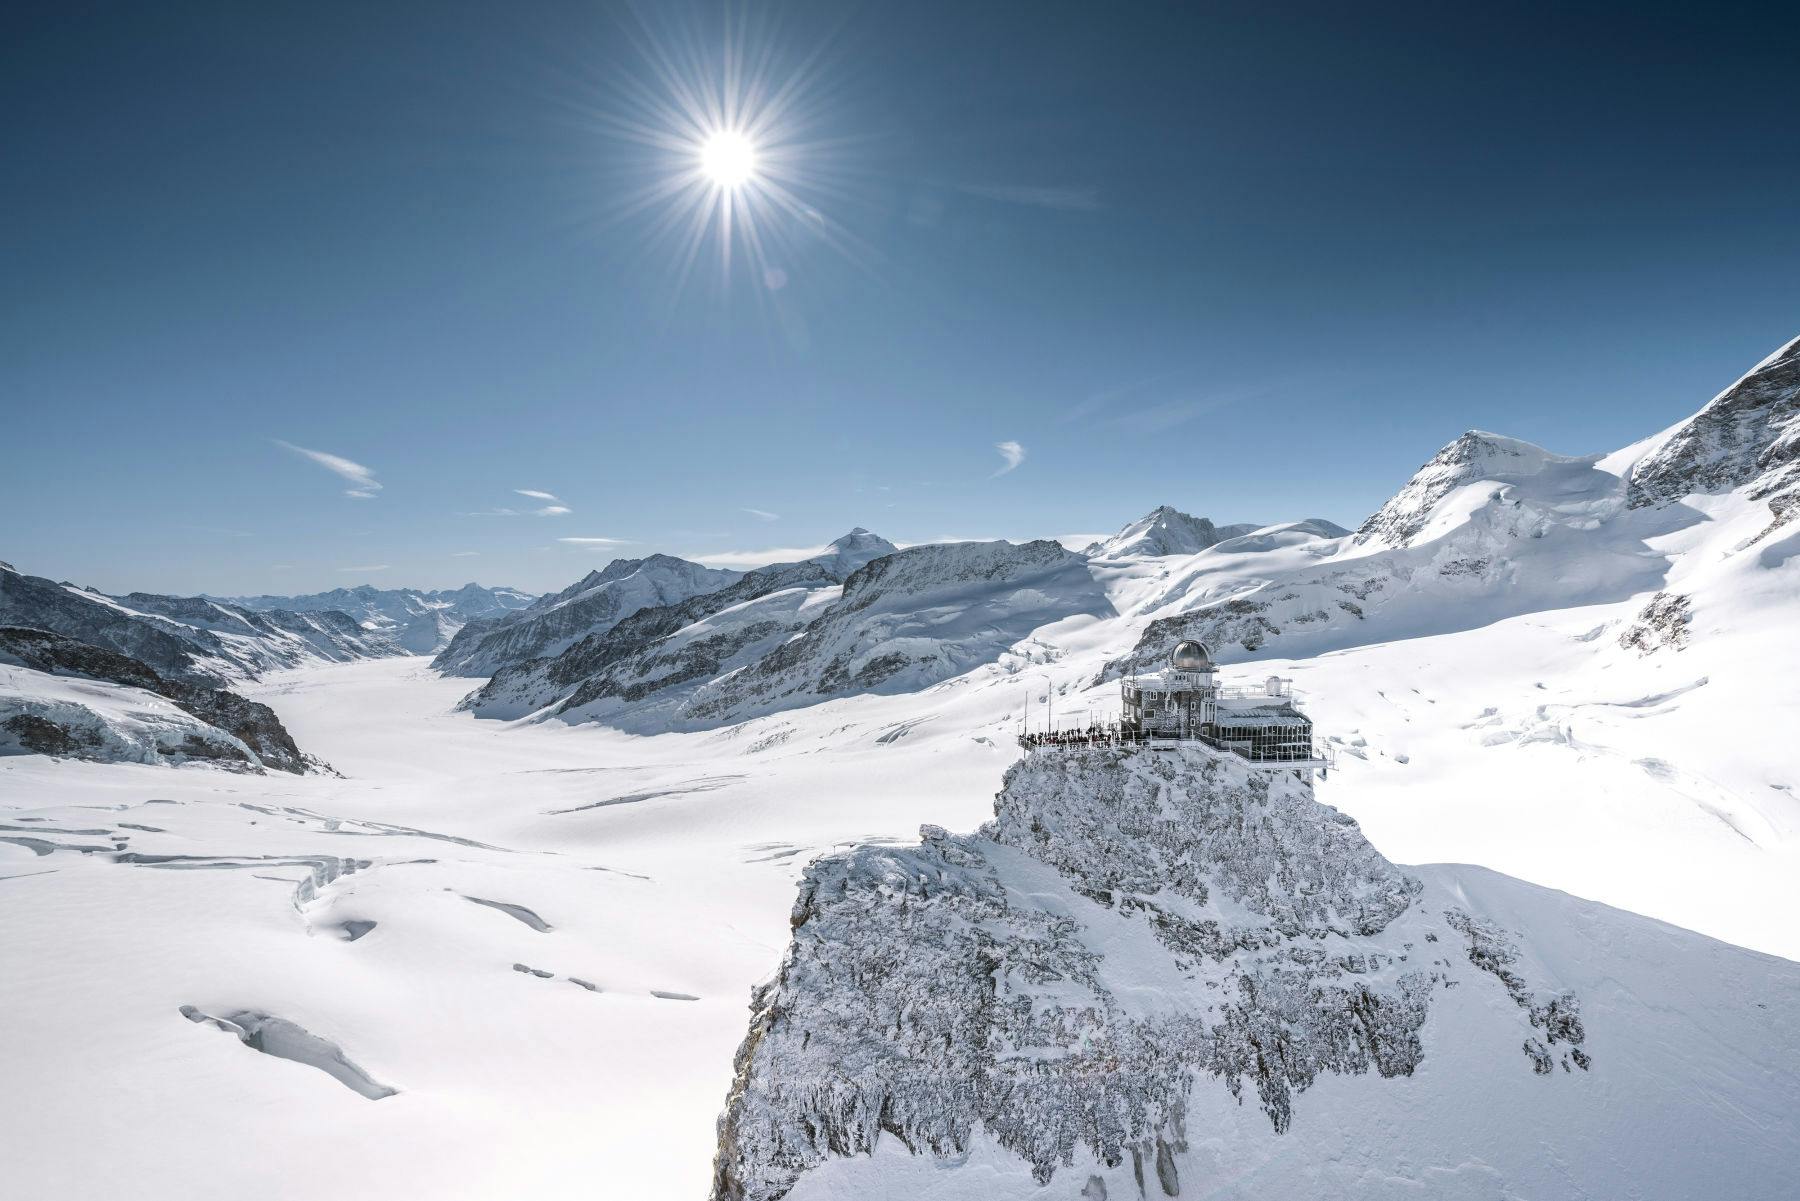 Bilet na szczyt Europy do Jungfraujoch z Lauterbrunnen